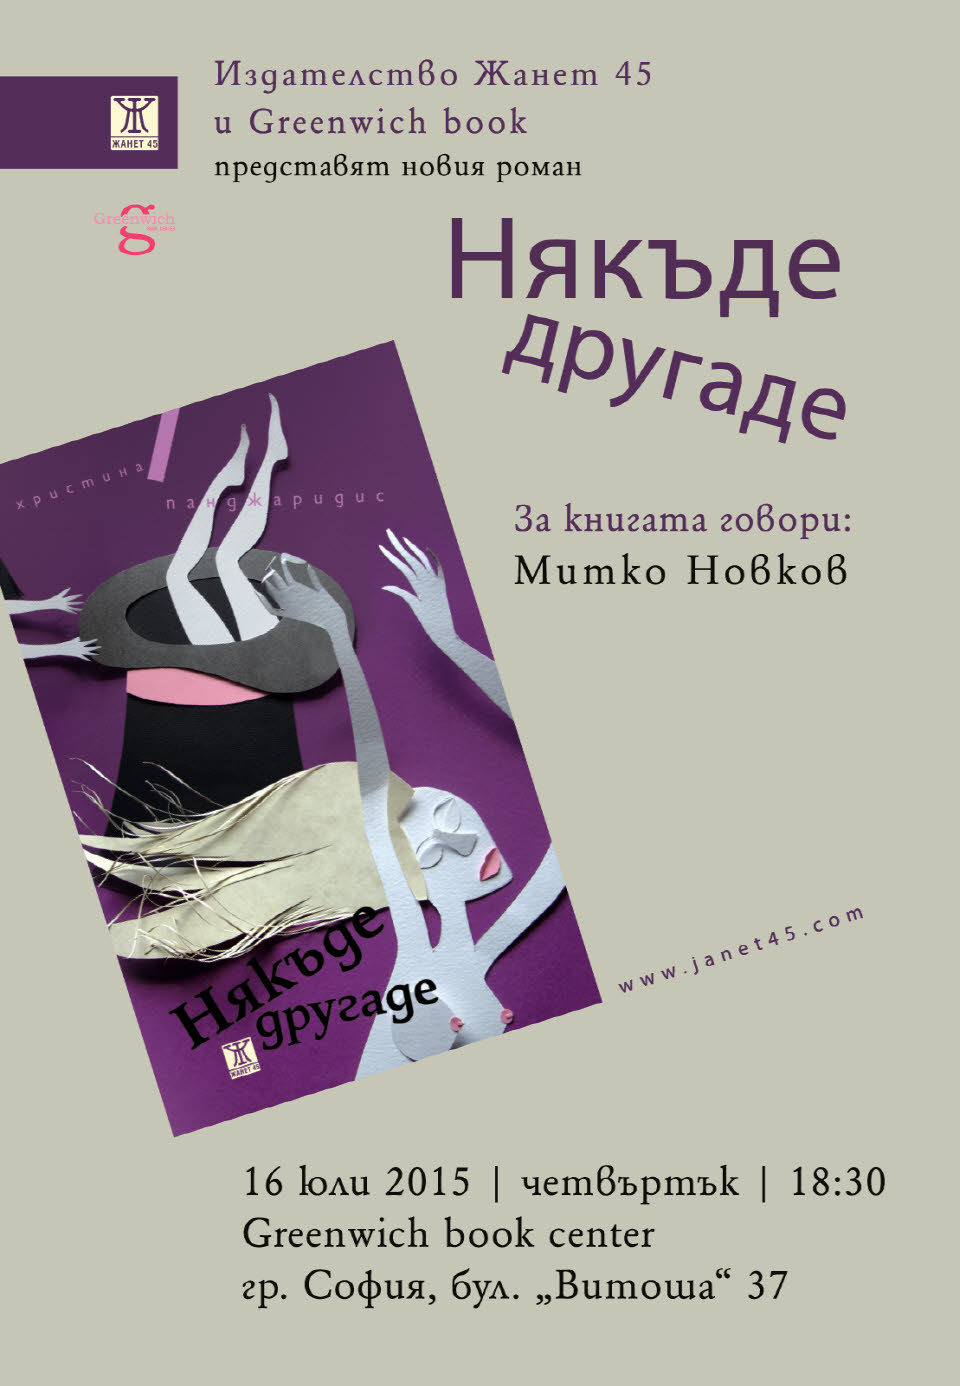 Романът "Някъде другаде" от Христина Панджаридис с представяне в София